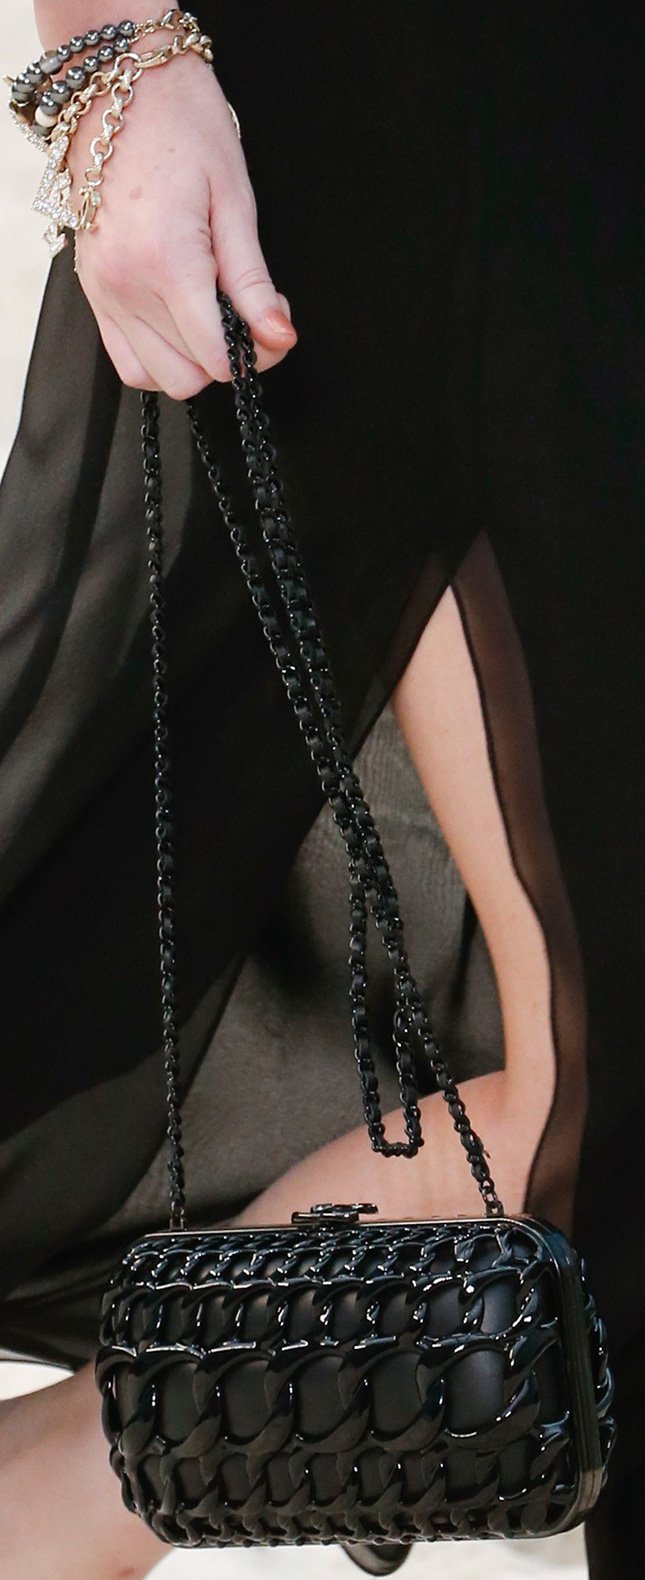 Chanel Handbags Spring Summer 2019 | SEMA Data Co-op